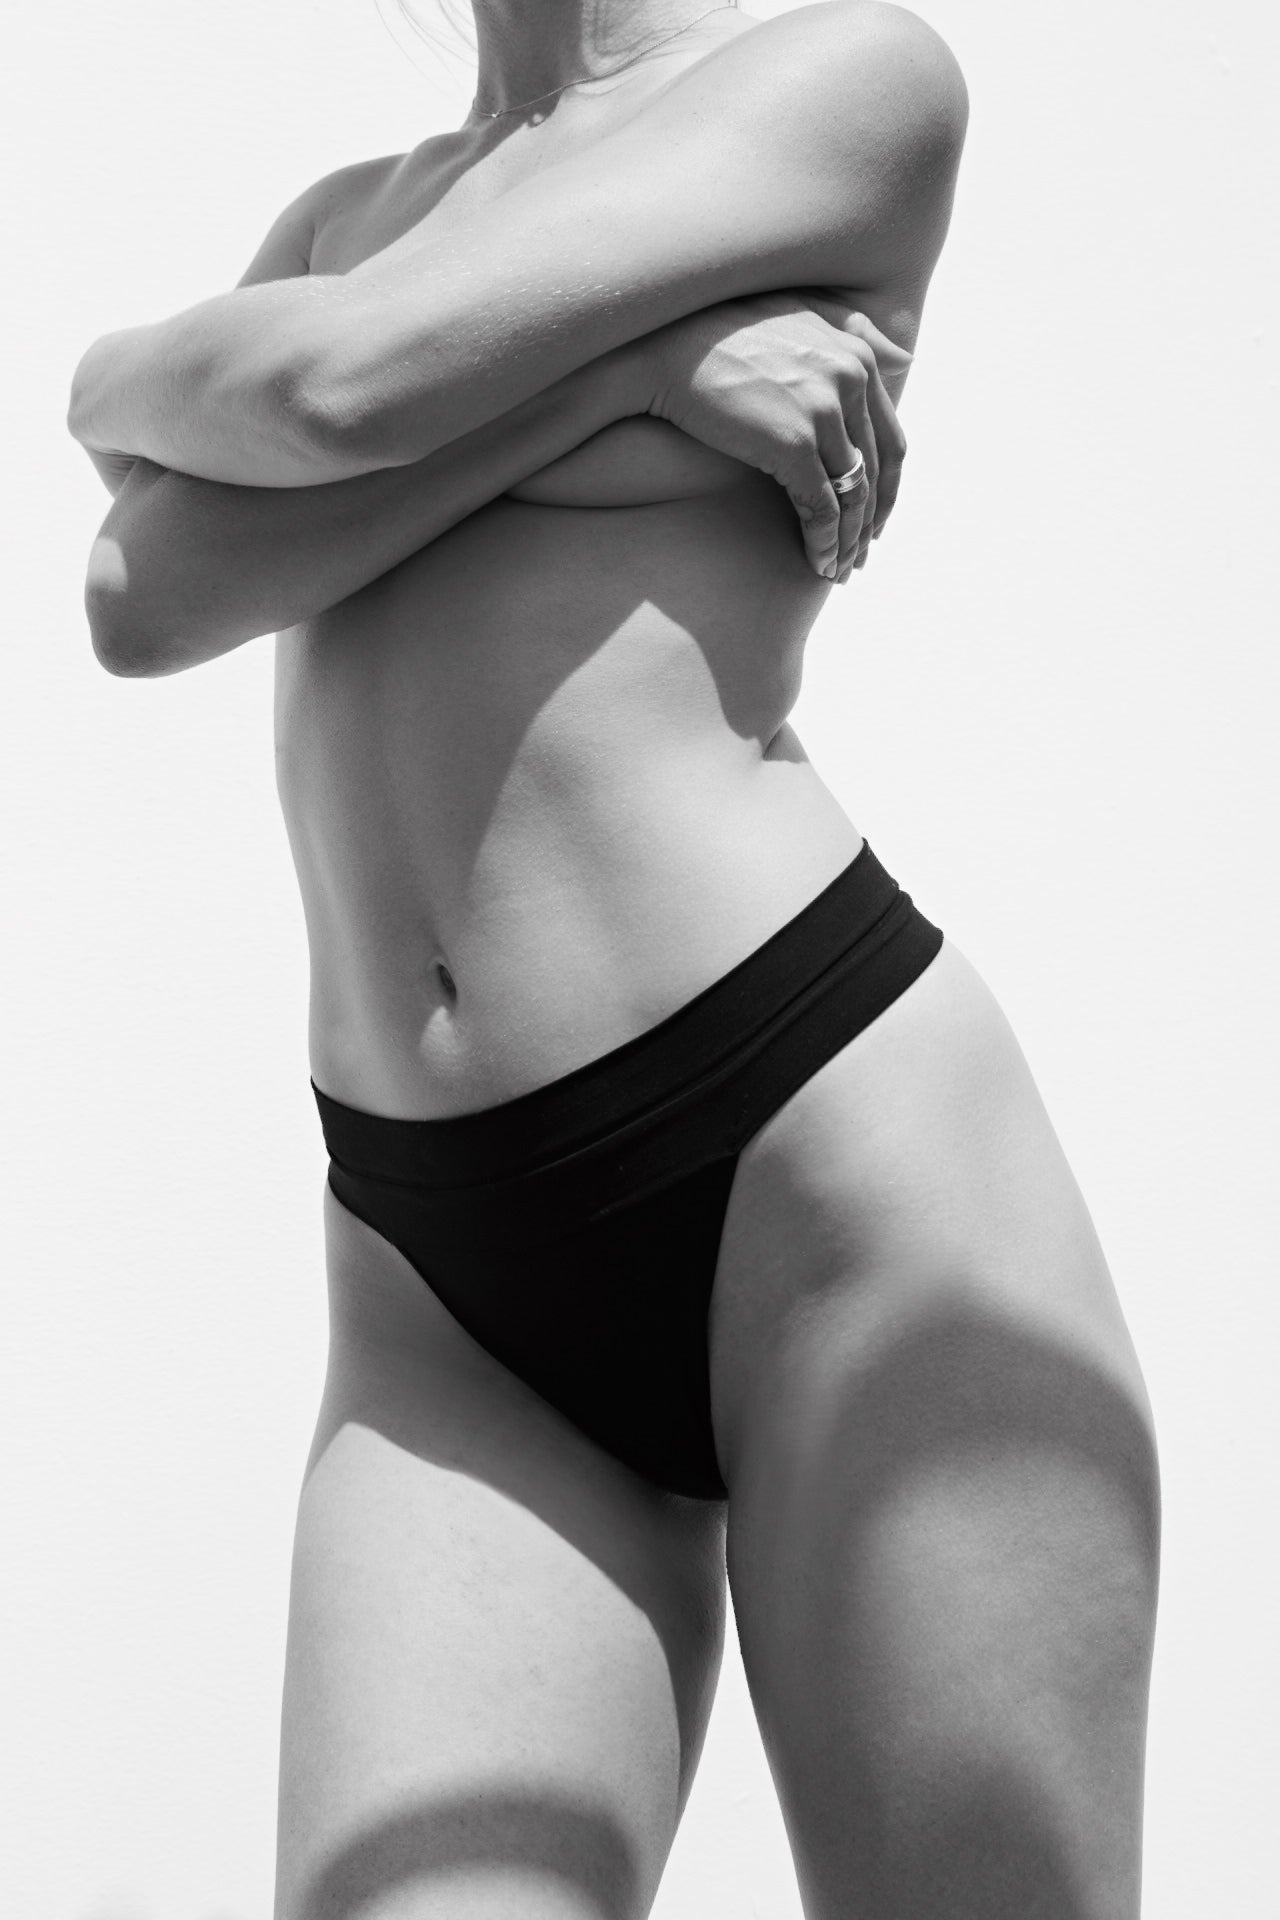 Women's Workout Underwear - Athletic Underwear for Active Women